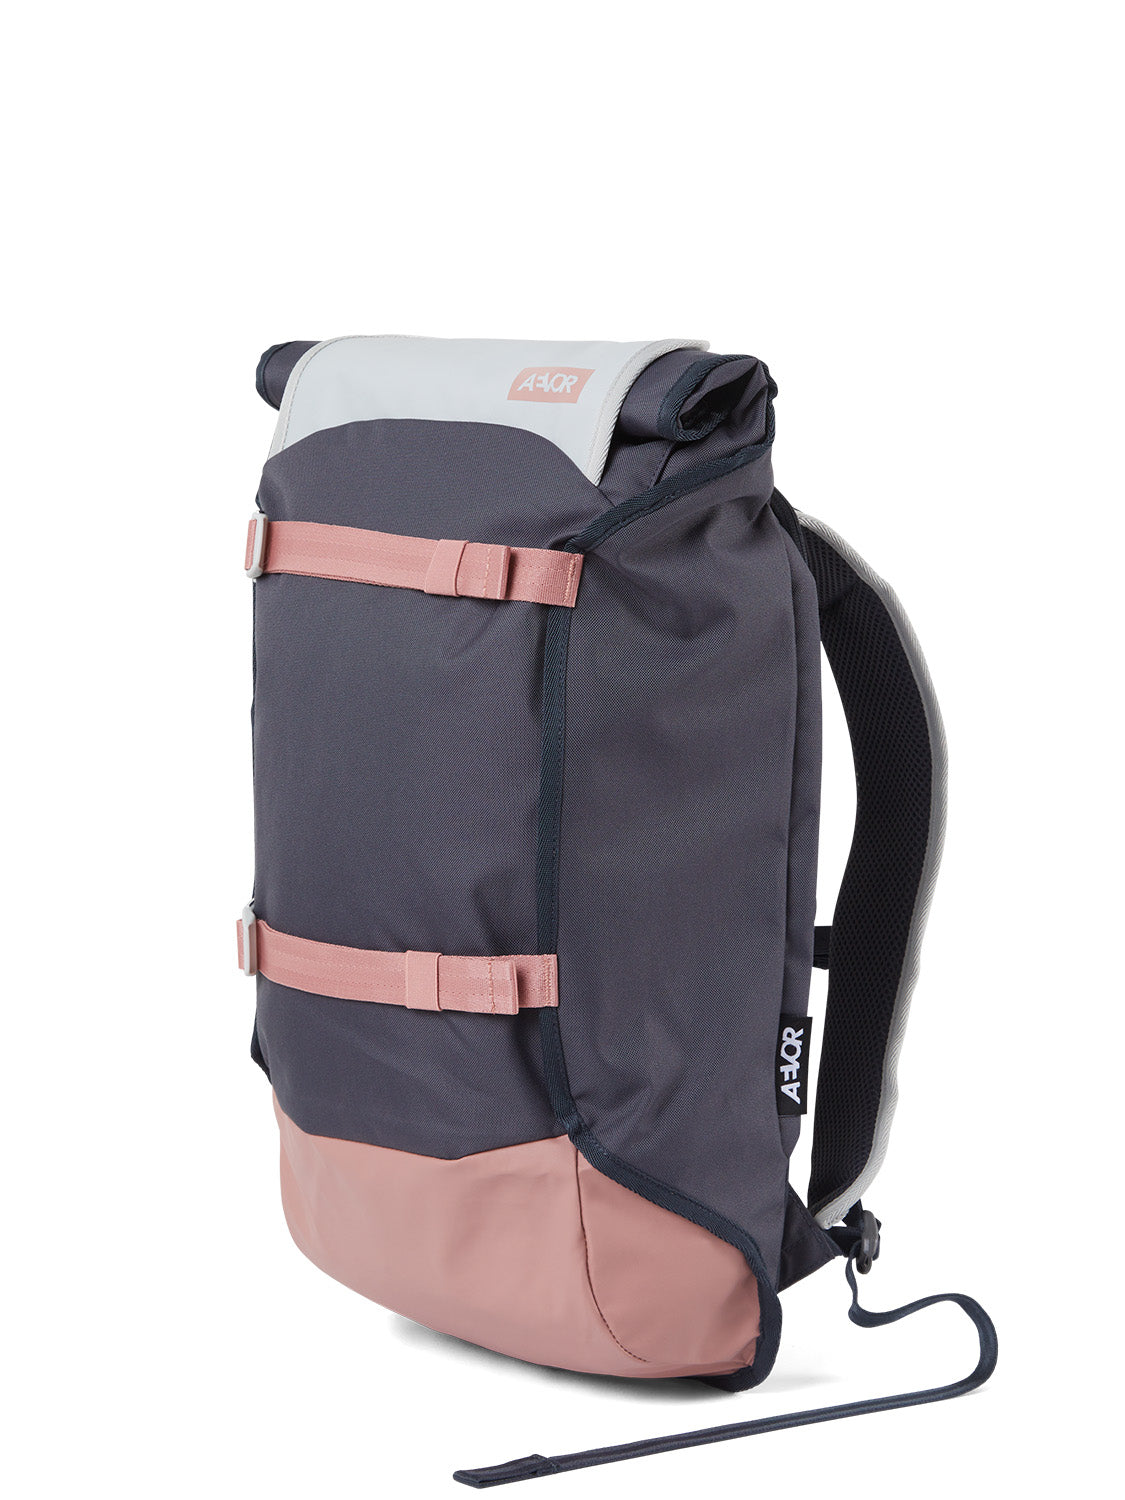 AEVOR-backpack-Trip-Pack-Chilled-Rose-side